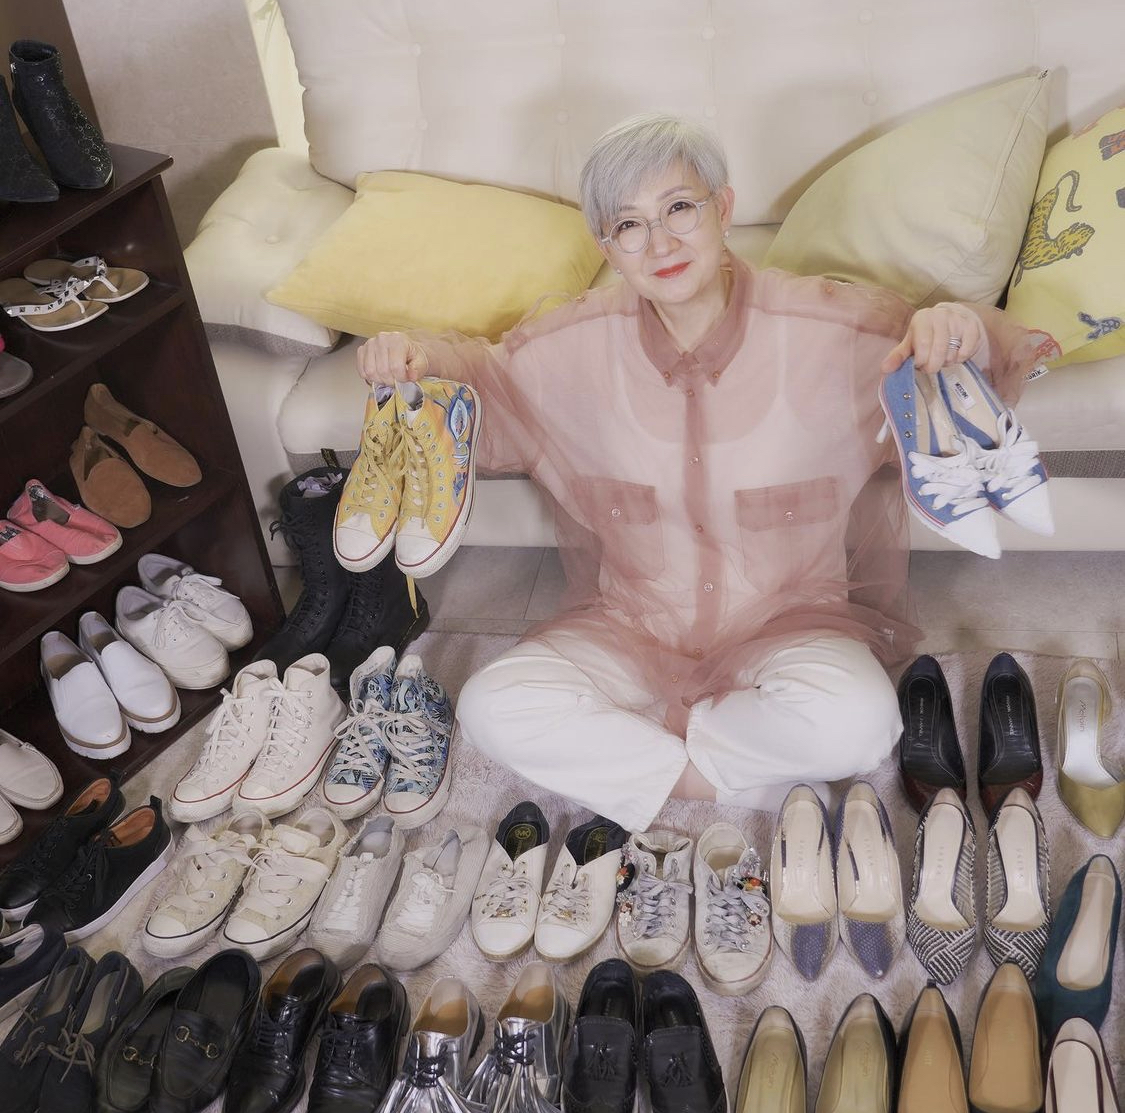 Tủ giày 'đồ sộ' của cụ bà Huyn Joo cho thấy bà cũng là một người có niềm đam mê mua sắm.